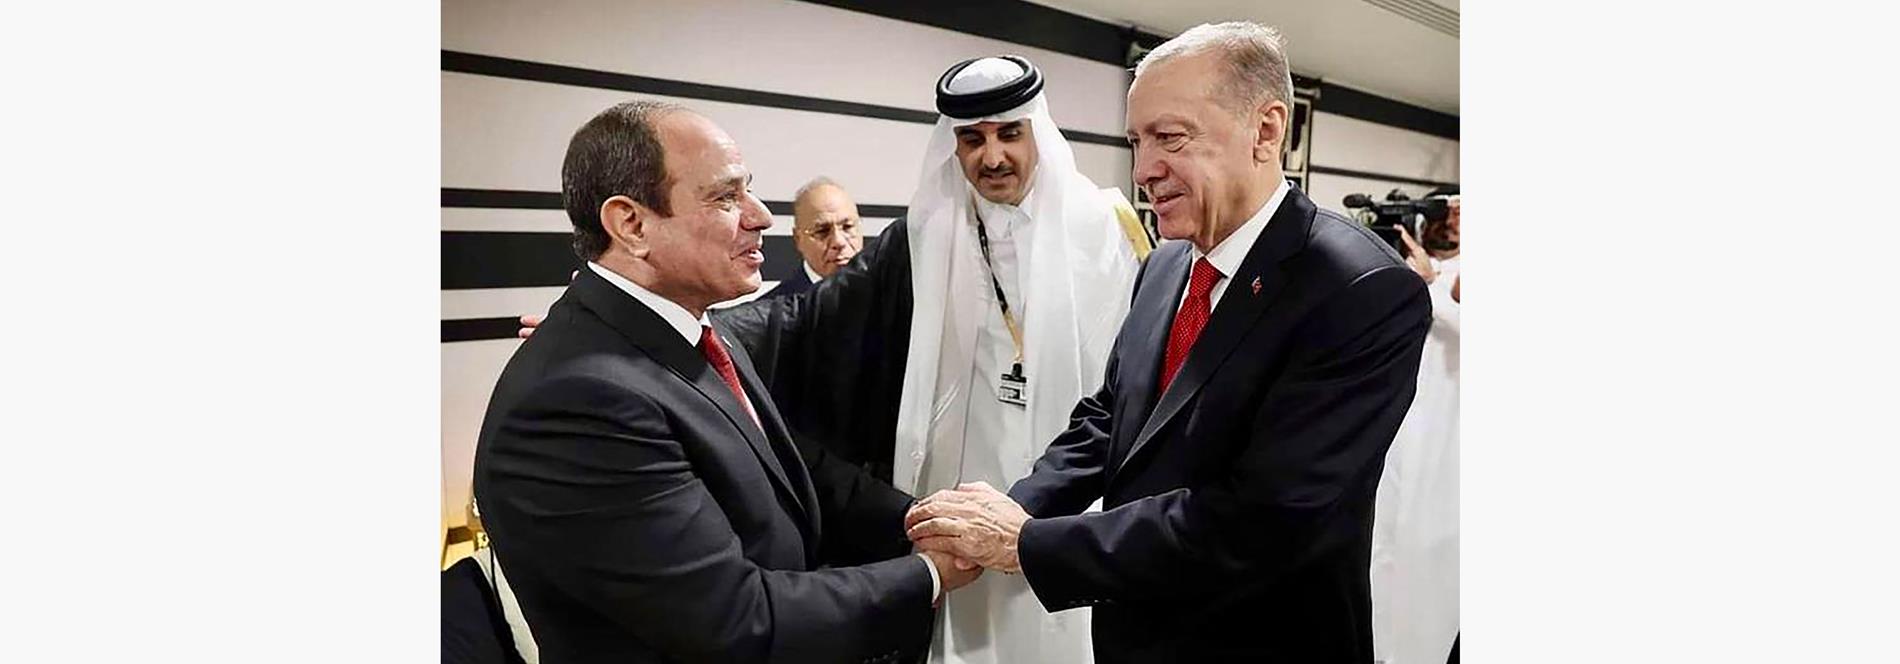 الرئيس عبد الفتاح السيسي يلتقي الرئيس التركي أردوغان بالدوحة